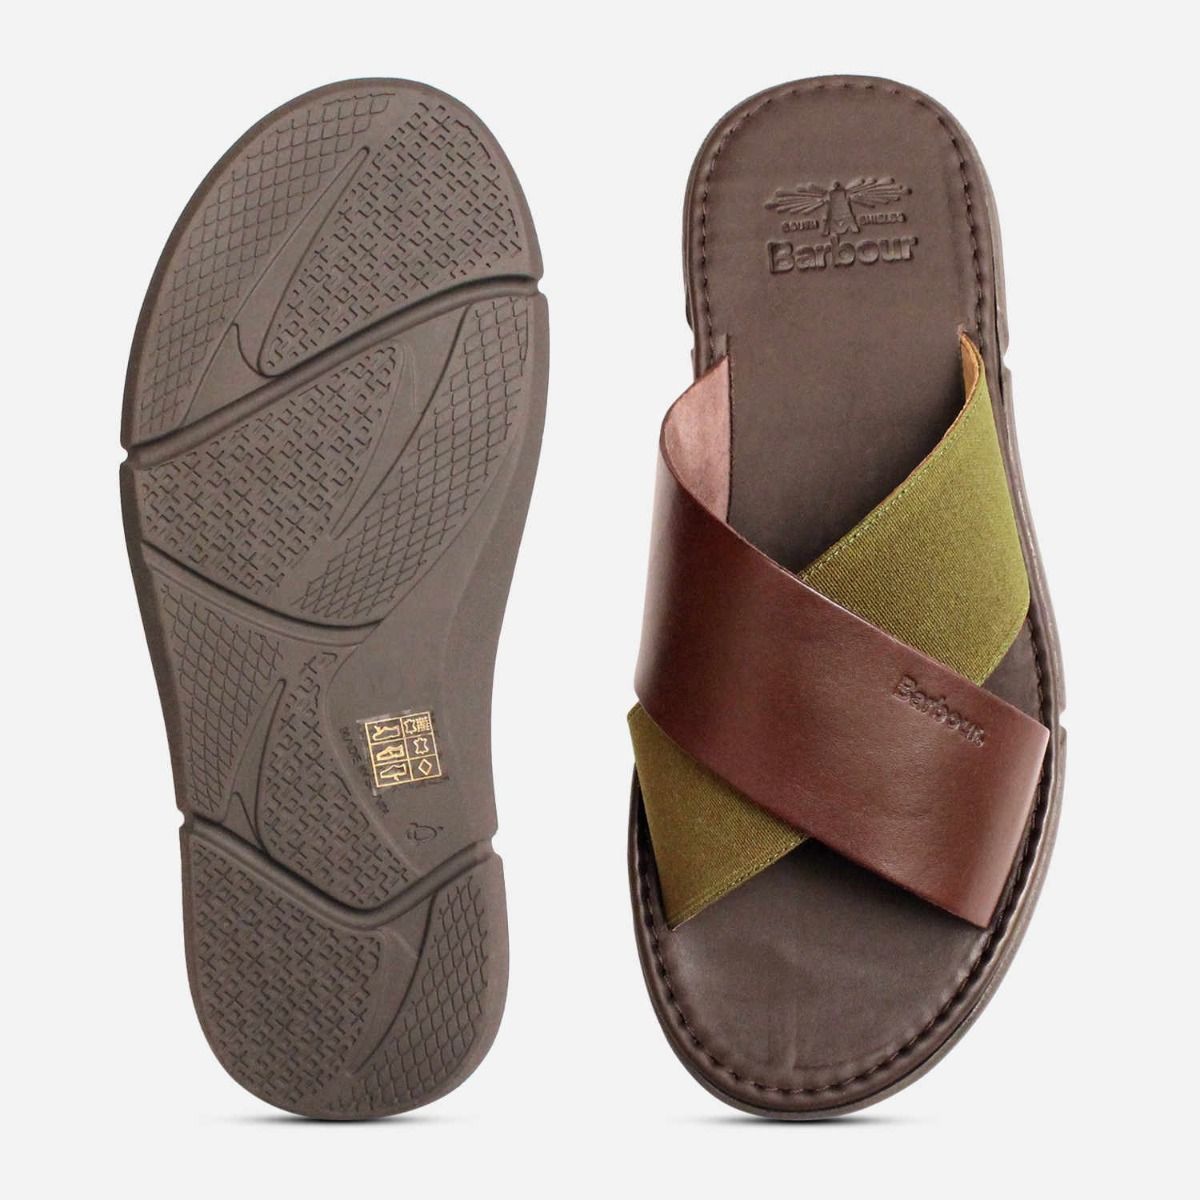 Barbour Designer Crossover Sandals in Olive Green & Brown